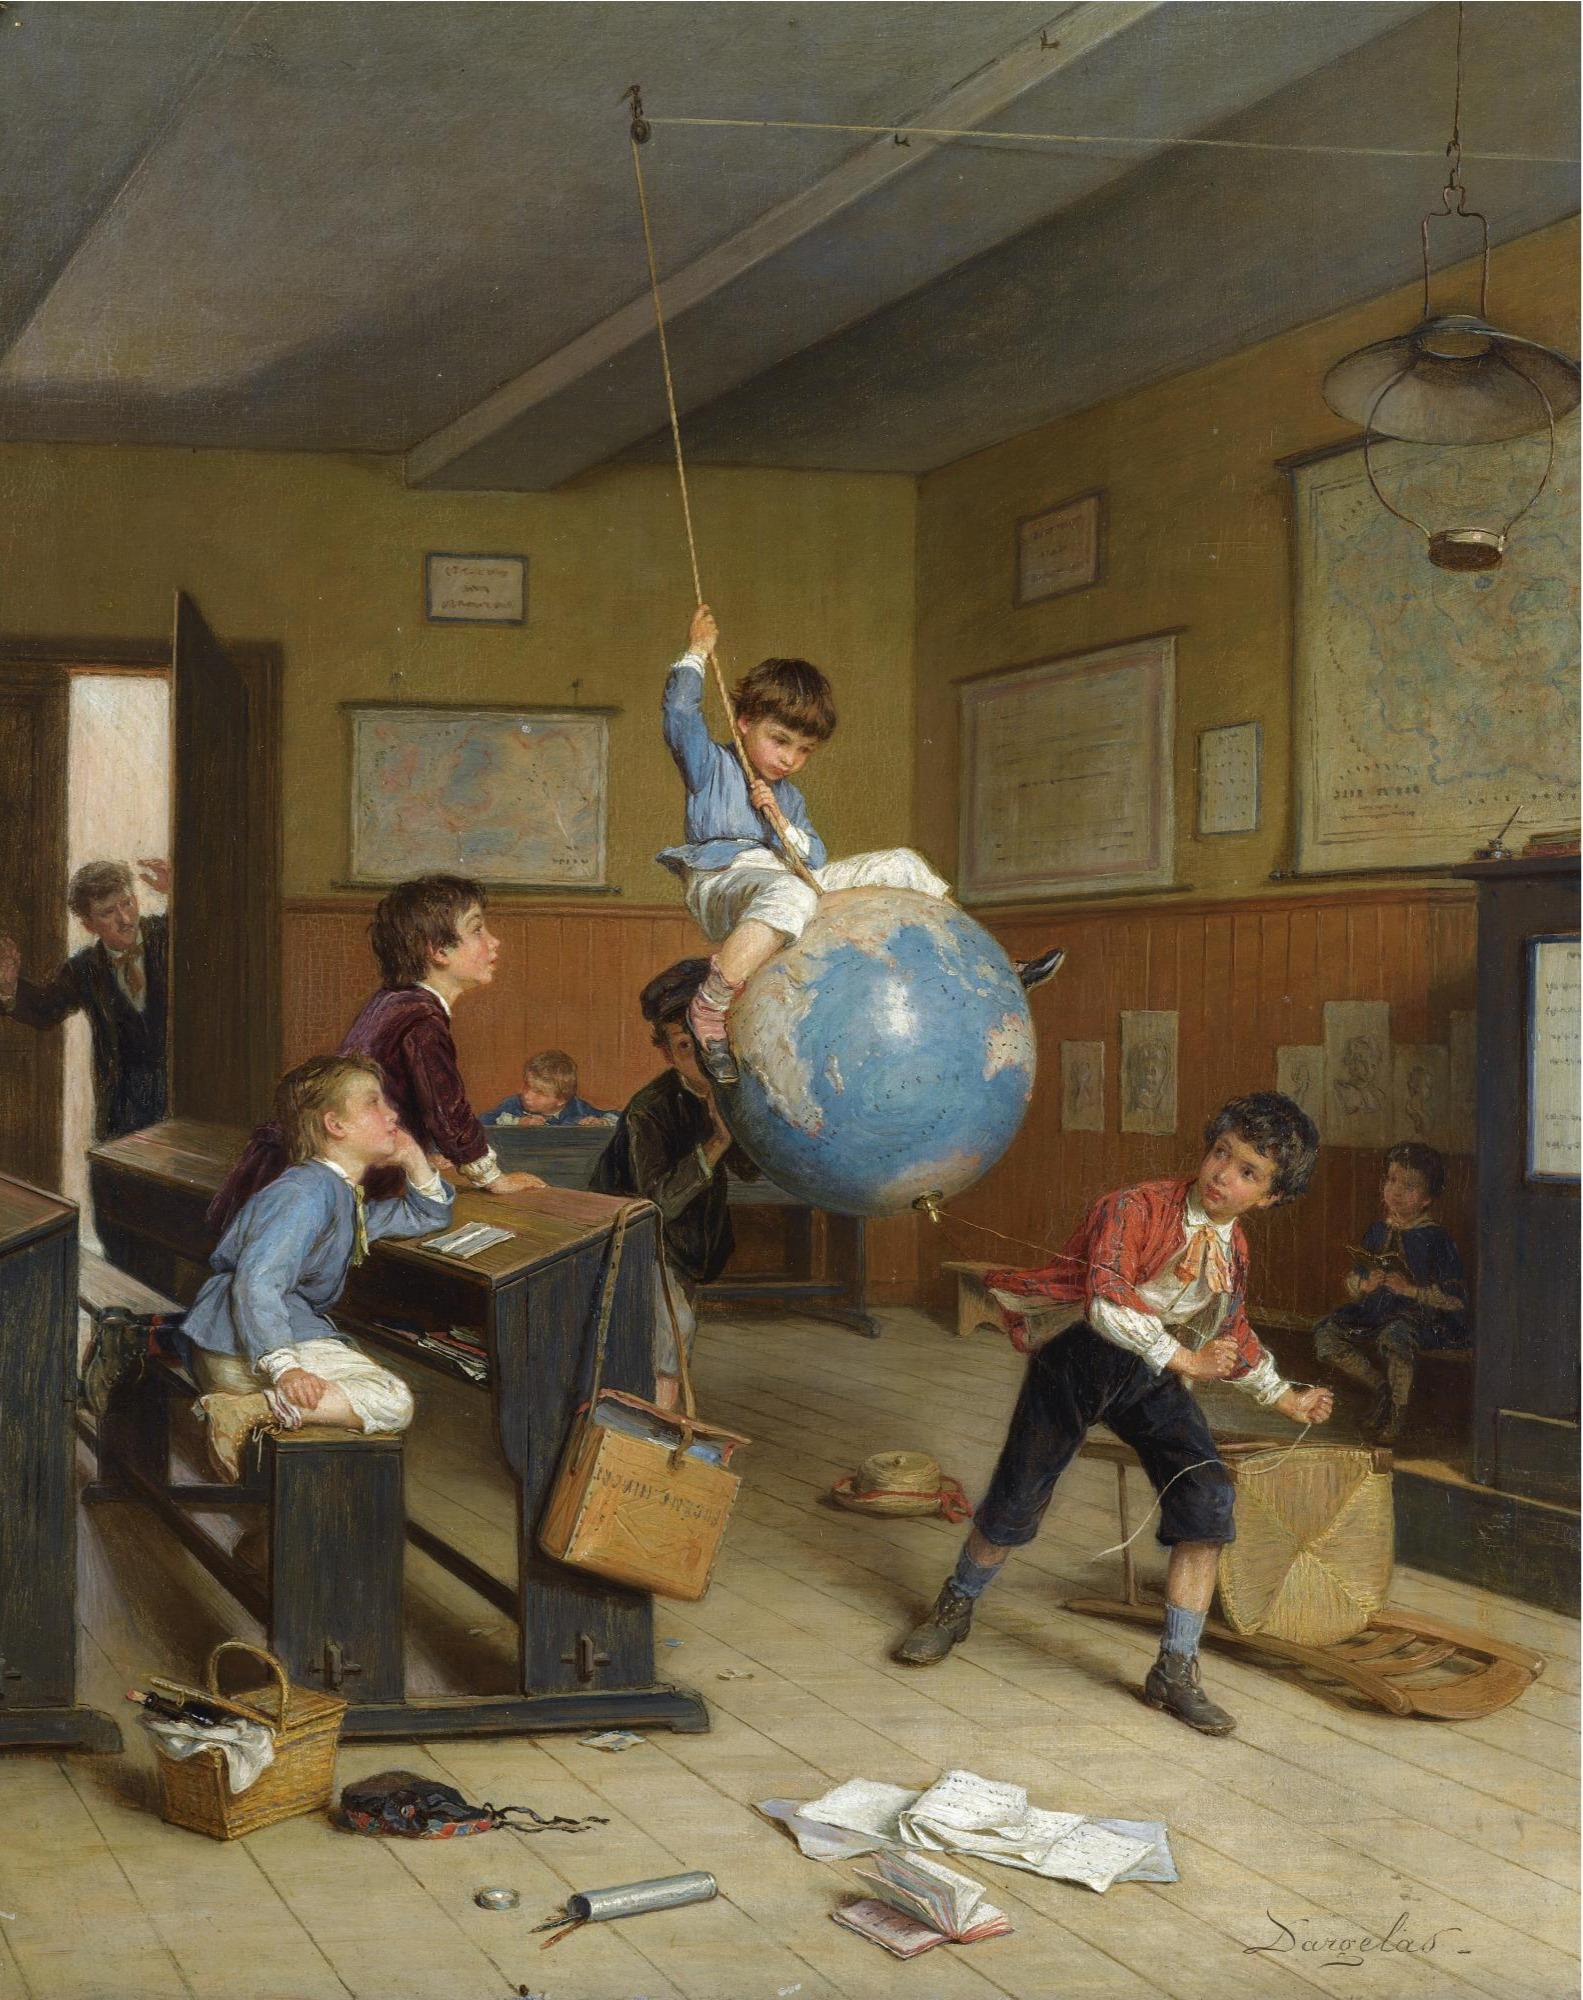 La vuelta al mundo by André Henri Dargelas - c. 1860 - 46 x 37,5 cm Colección privada